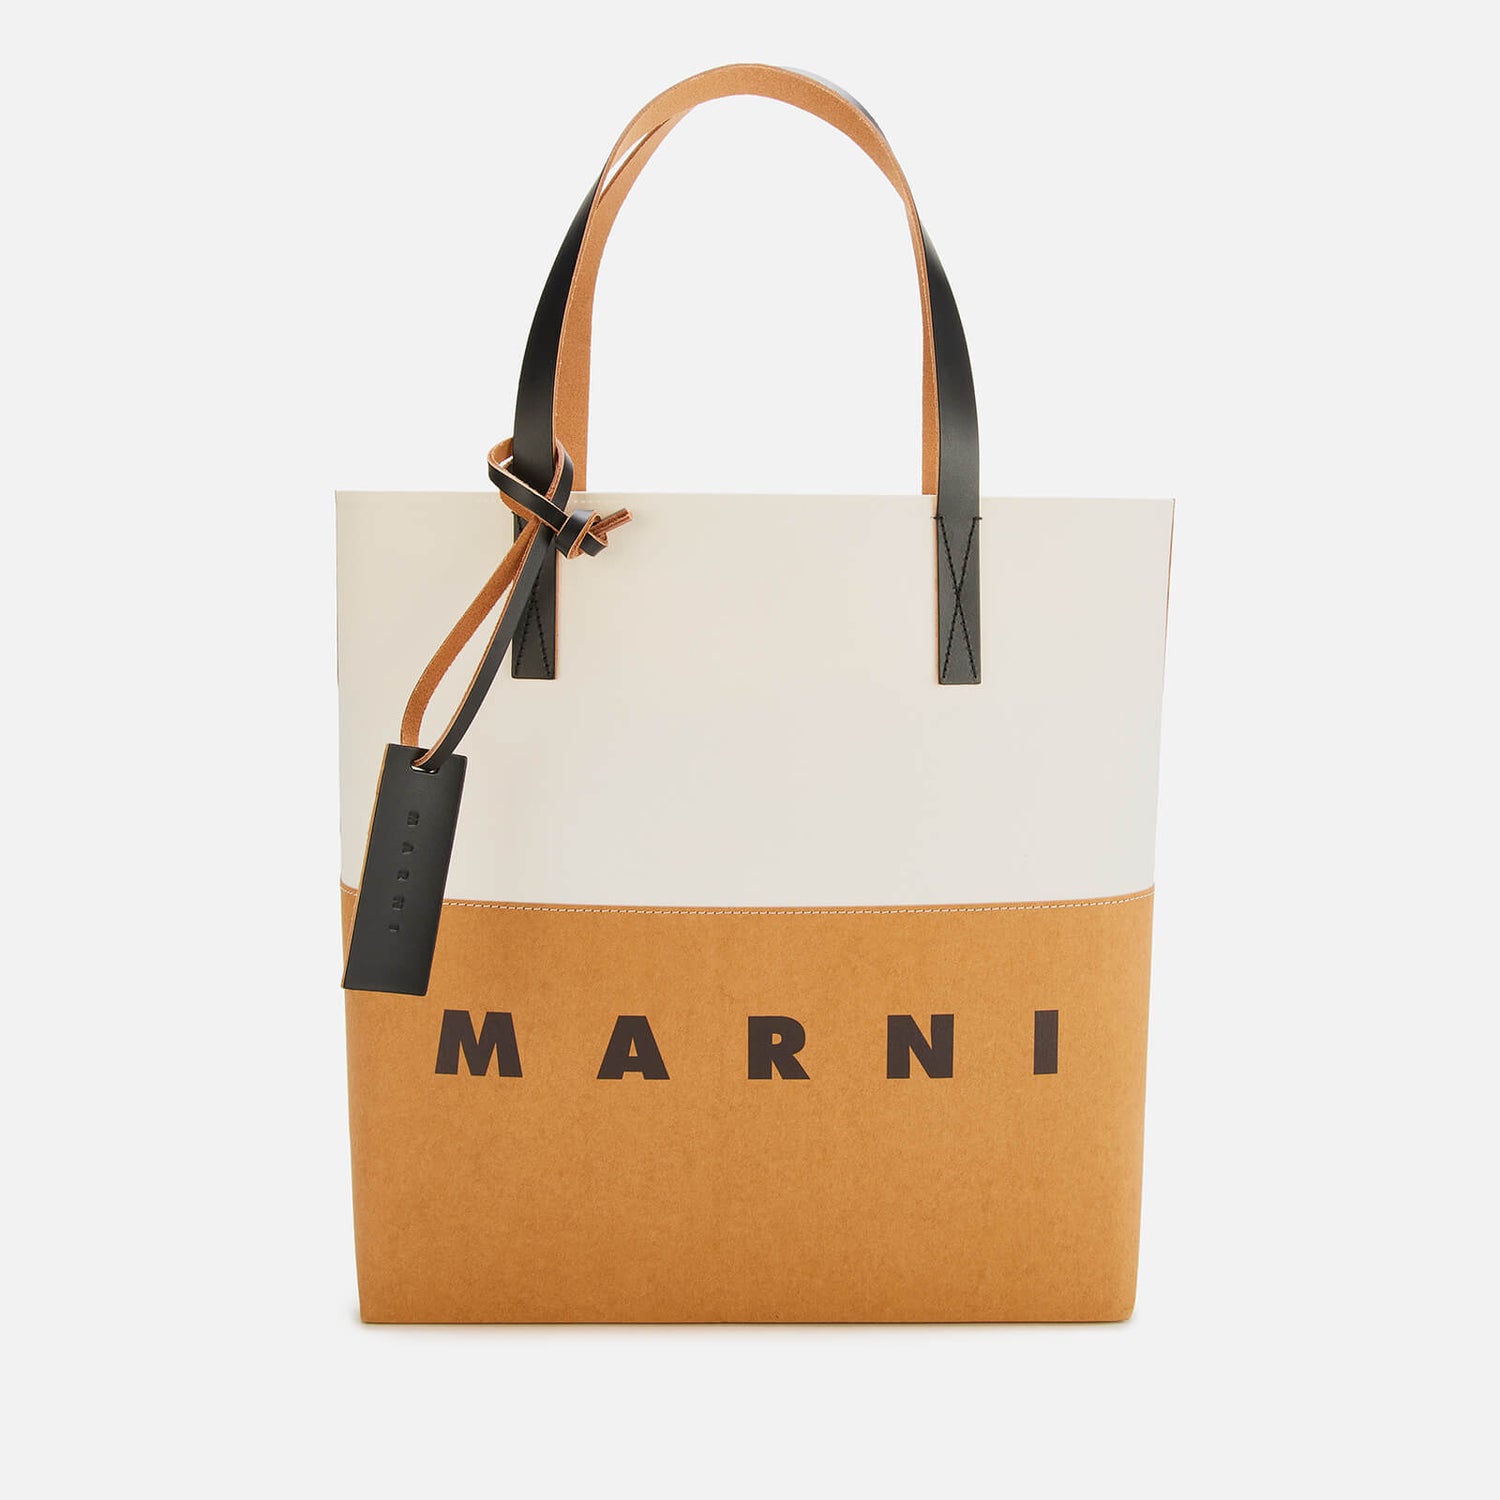 Marni Women's Shopper - Sandstorm/Natural White/Black